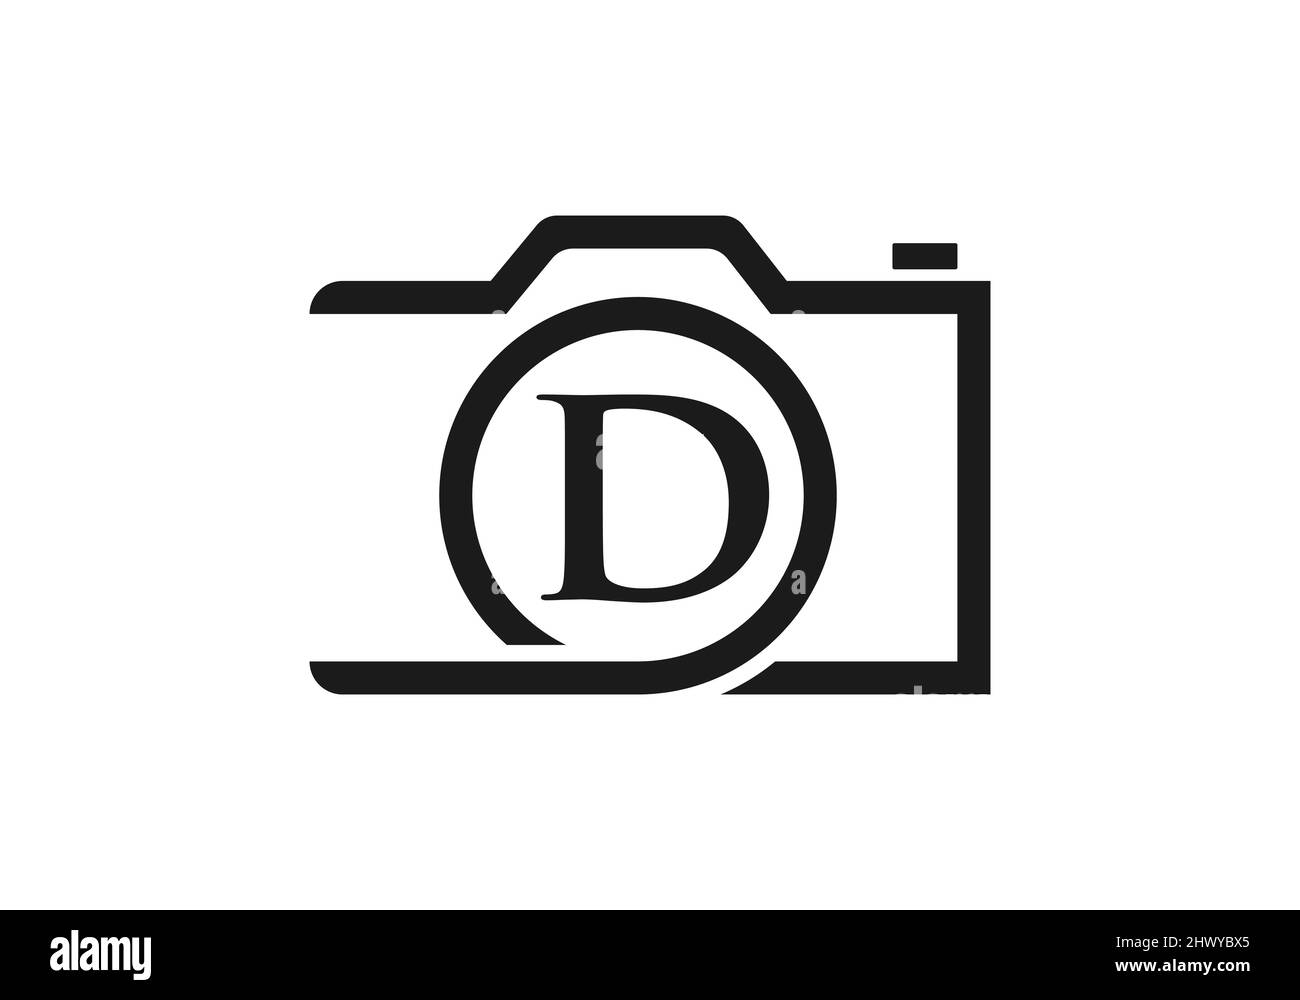 Logo de photographie Design sur lettre D. lettre D Photographie logo Design. Logo de l'appareil photo inspiration de la conception, modèle de photo Illustration de Vecteur